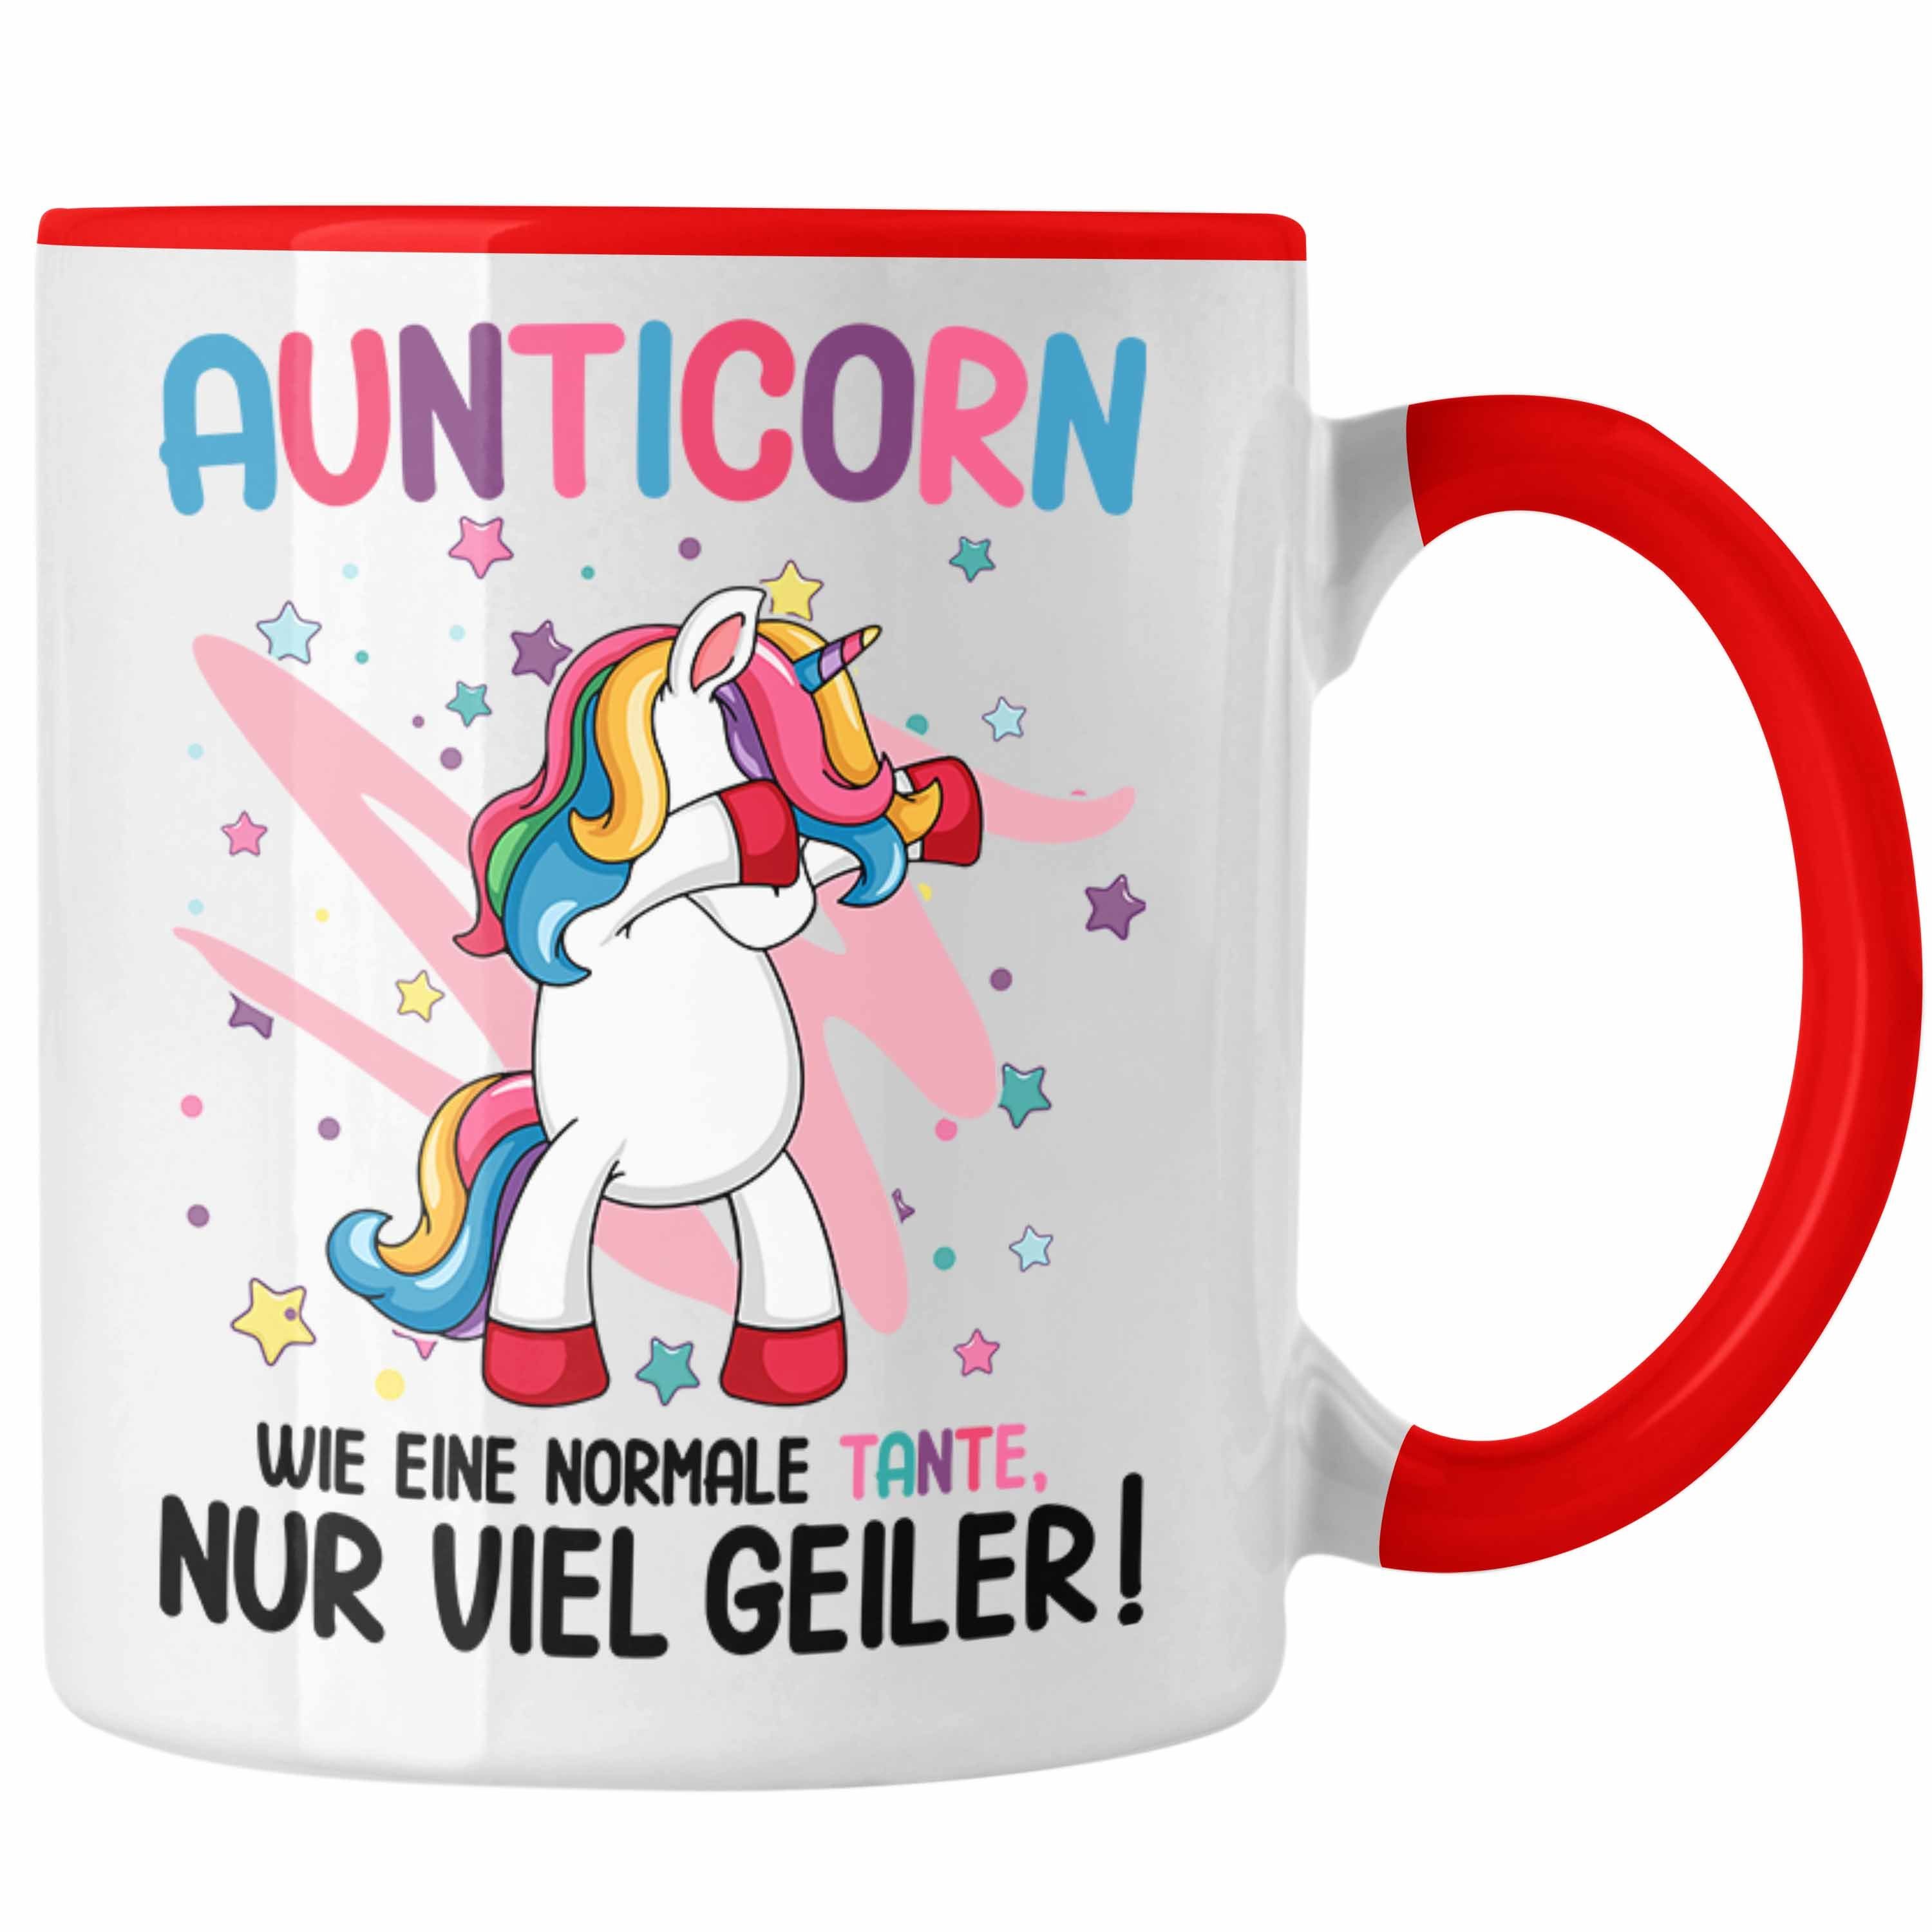 Trendation Tante Beste Aunticorn Tante Geschenk Einhorn Eine Geburtstag Rot Lustig Trendation - Normale Spruch Tasse Wie